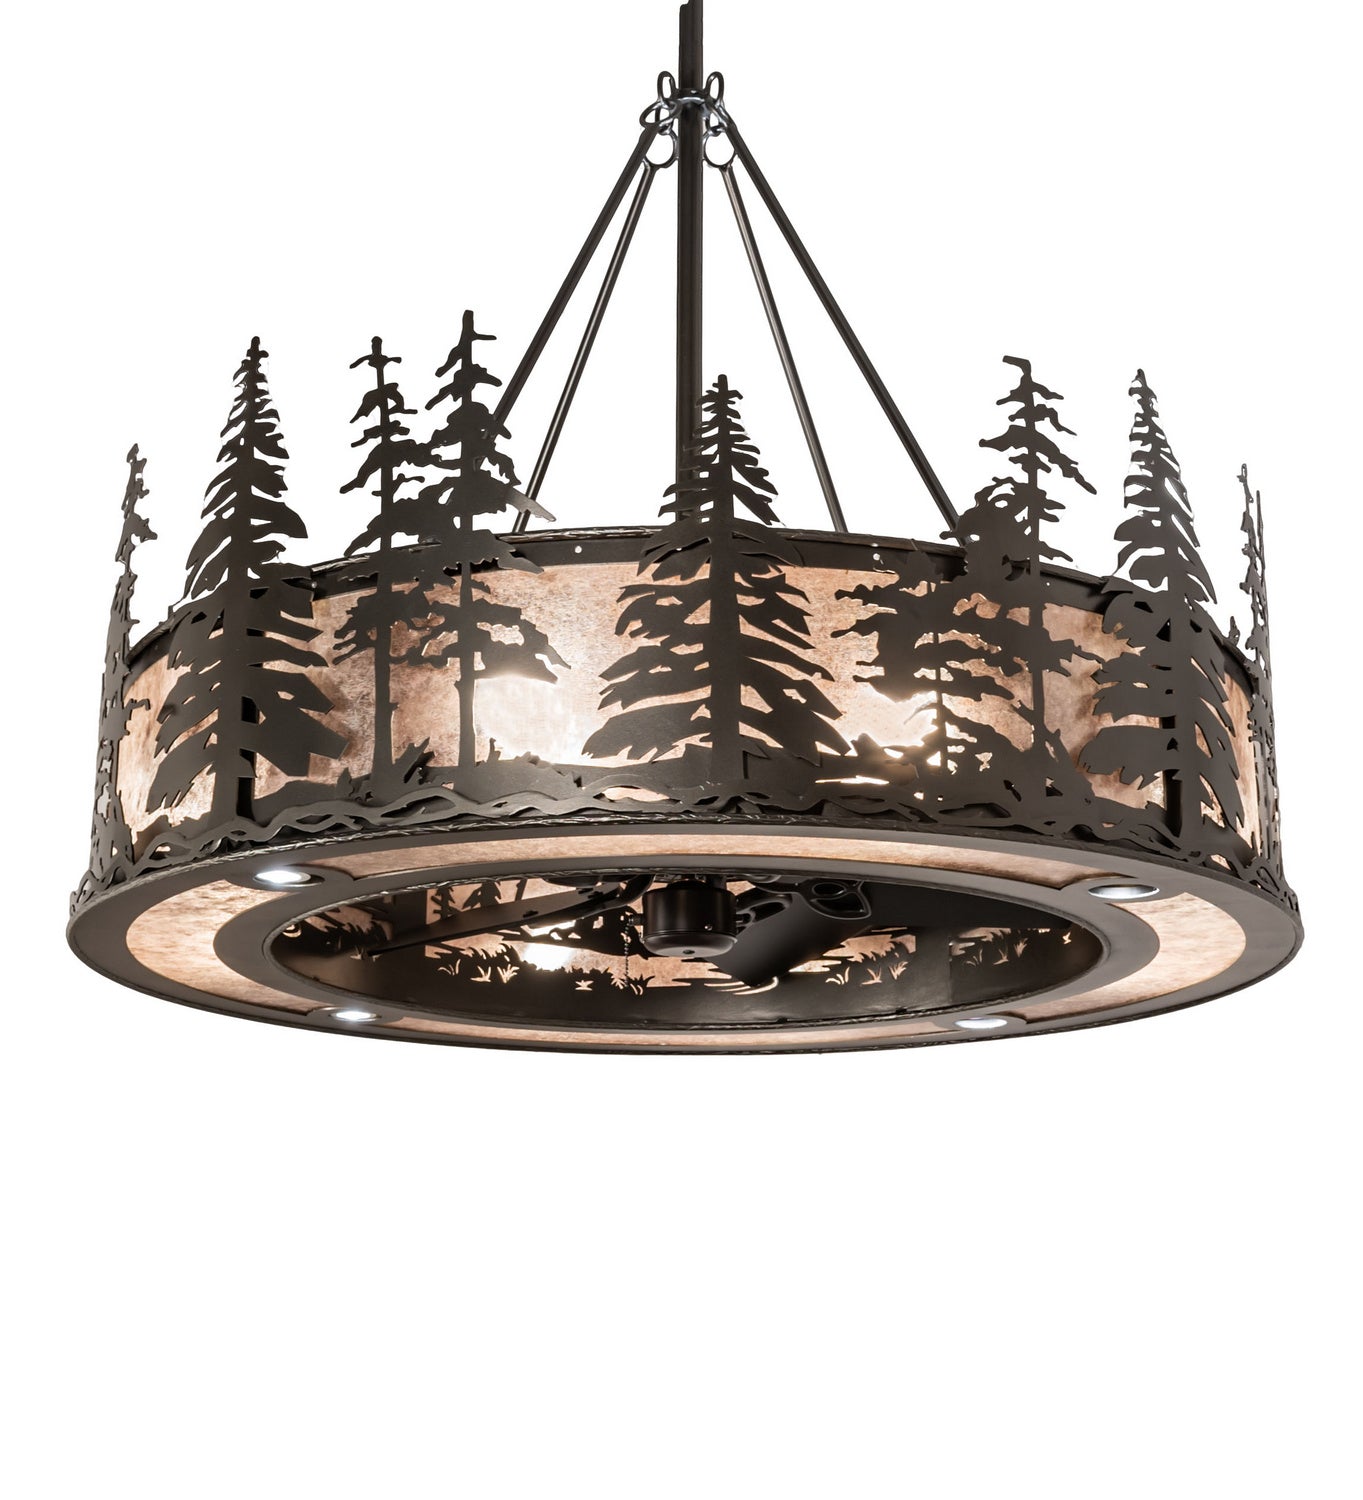 Meyda Tiffany Tall Pines 248841 Ceiling Fan - Oil Rubbed Bronze